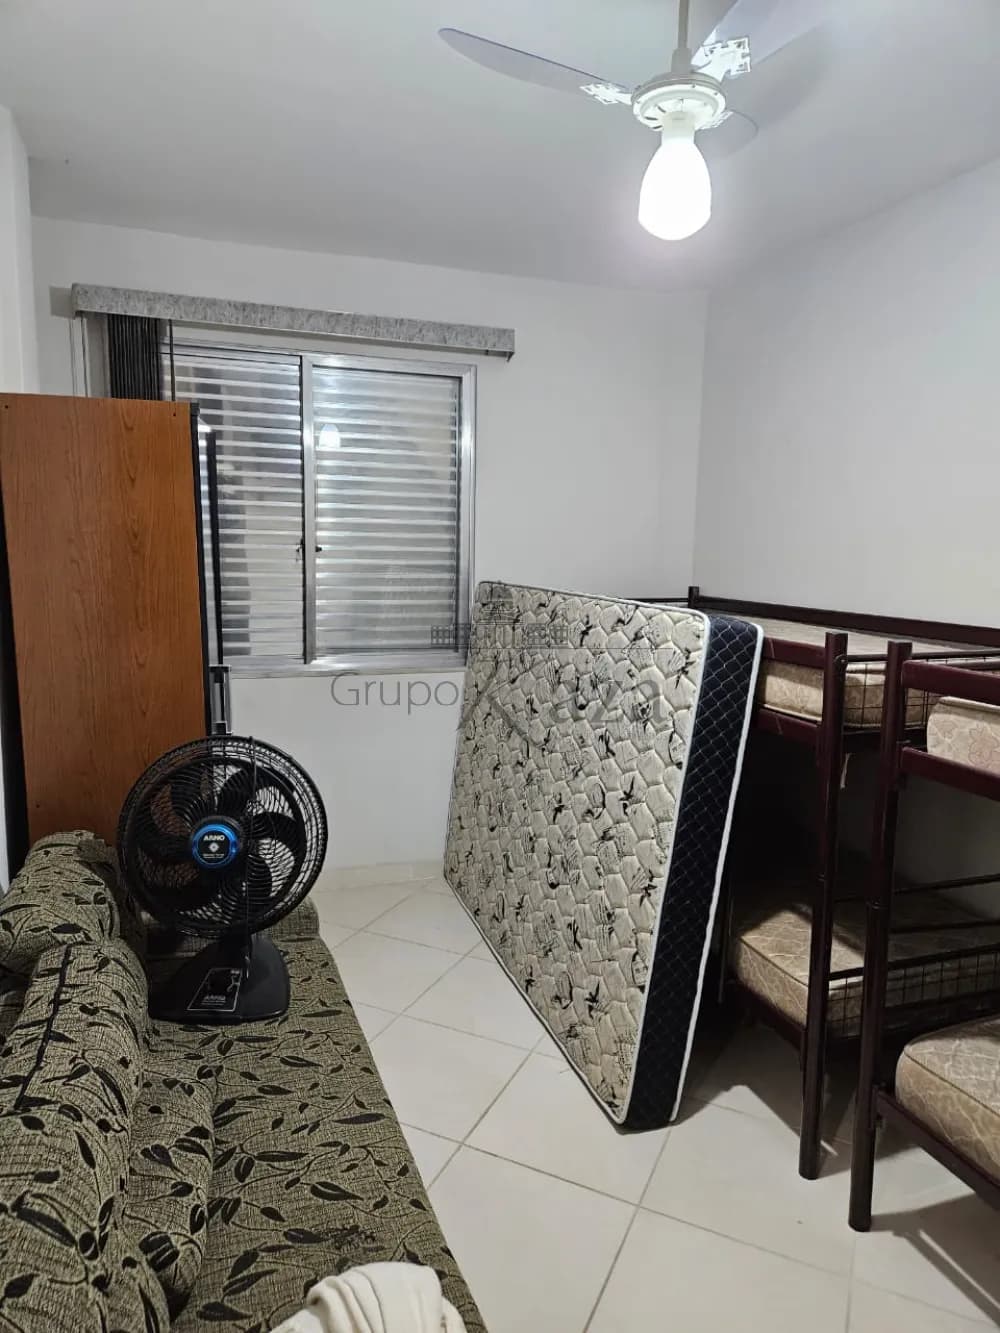 Foto 10 de Apartamento Padrão em Itaguá, Ubatuba - imagem 10